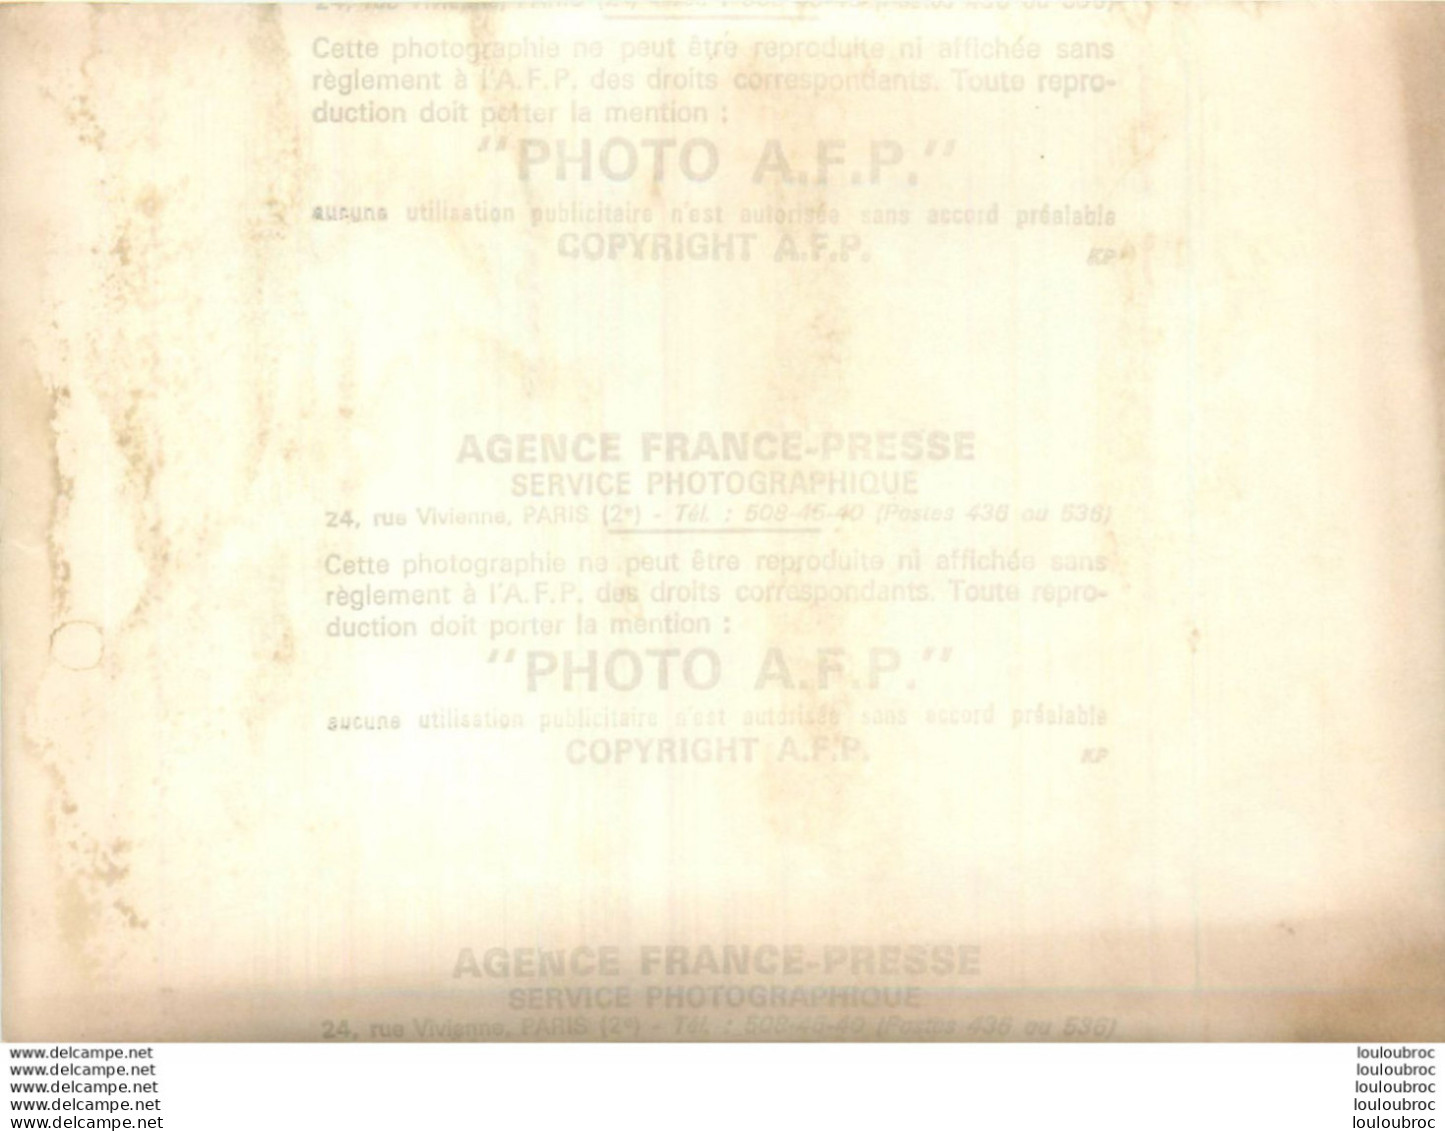 GRAND PRIX DE PAU FORMULE II 04/1971 LE SUEDOIS WISSEL VAINQUEUR ET JABOUILLE SECOND  ET JOUSSAUD 3EM  PHOTO AFP 18X13CM - Sports